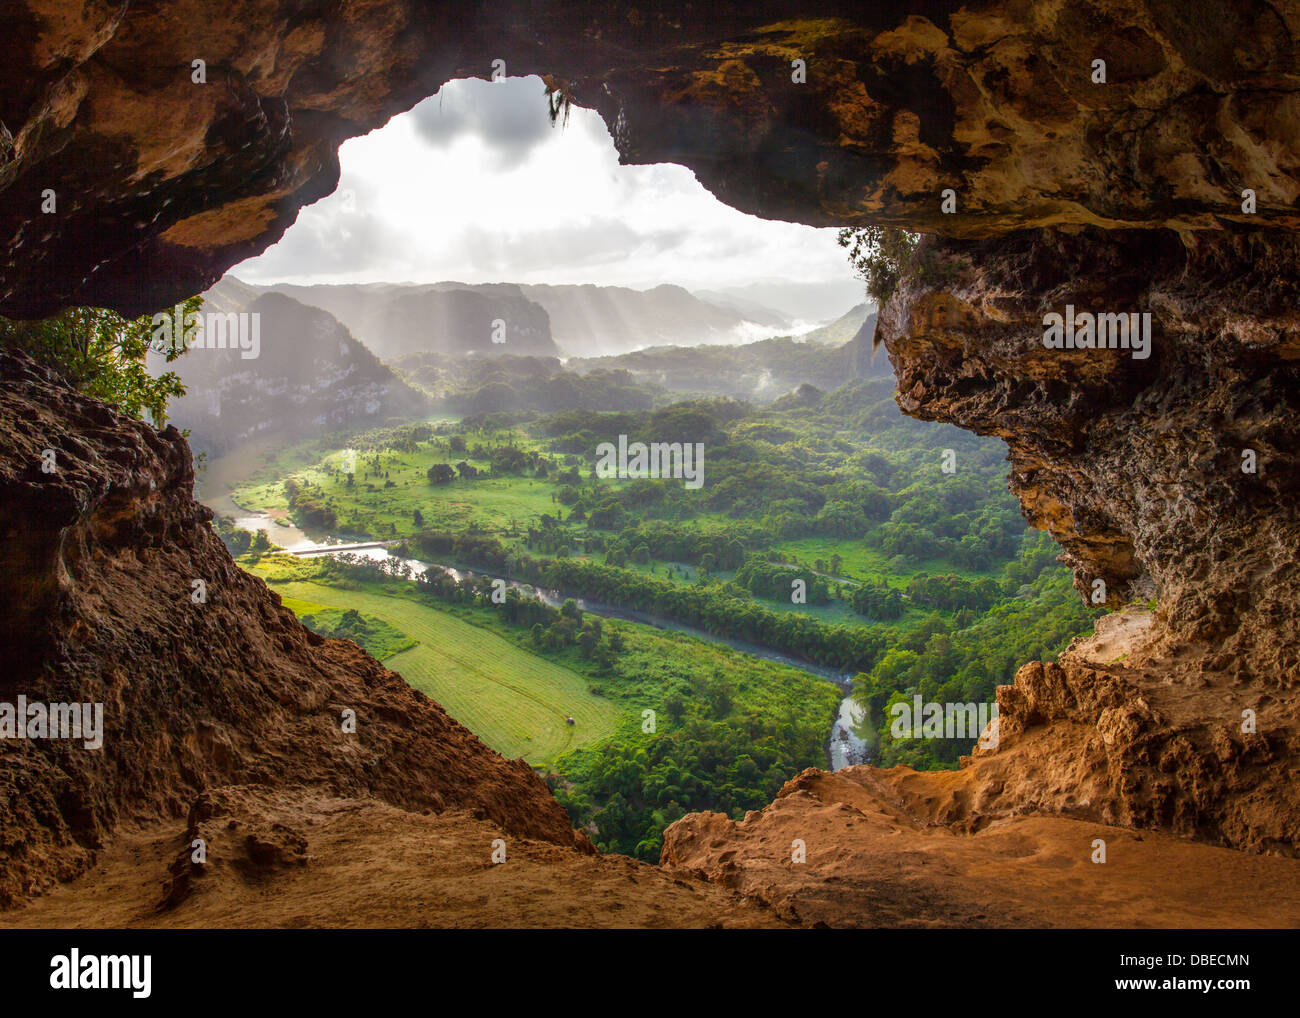 Vue depuis l'intérieur de la grotte Cueva Ventana (Fenêtre) près d'Arecibo, Puerto Rico Banque D'Images